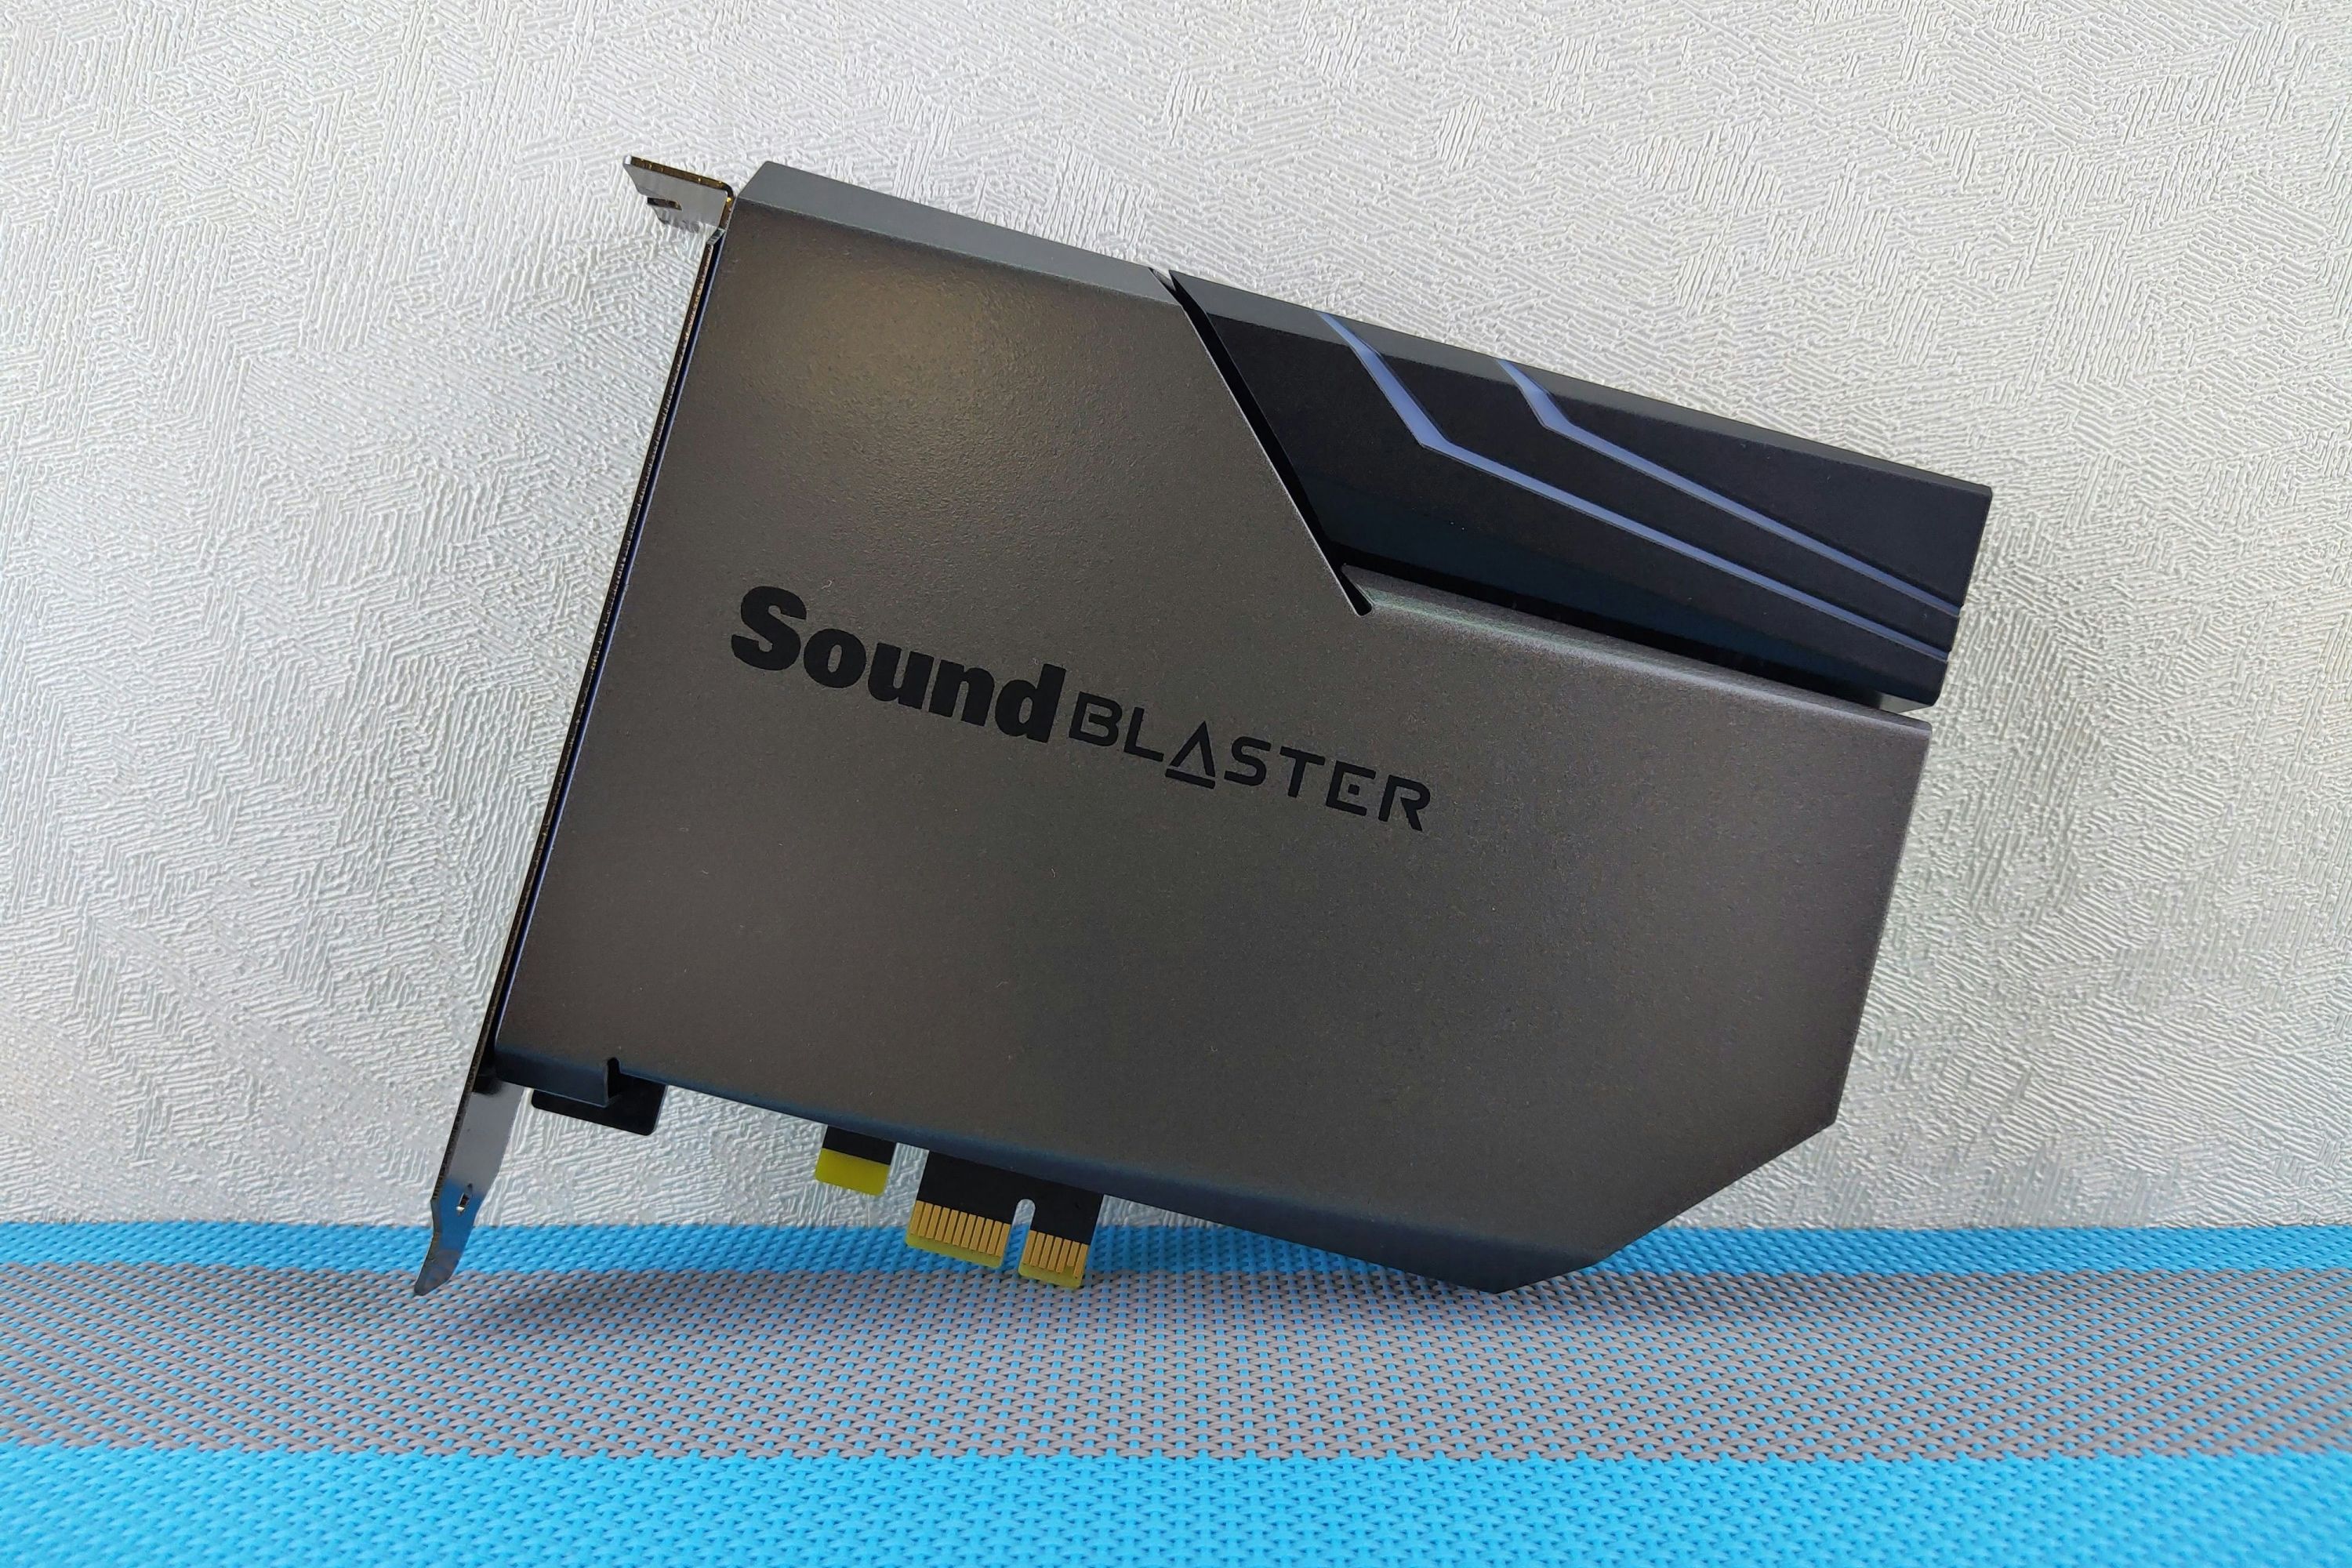 A Sound Blaster sound card